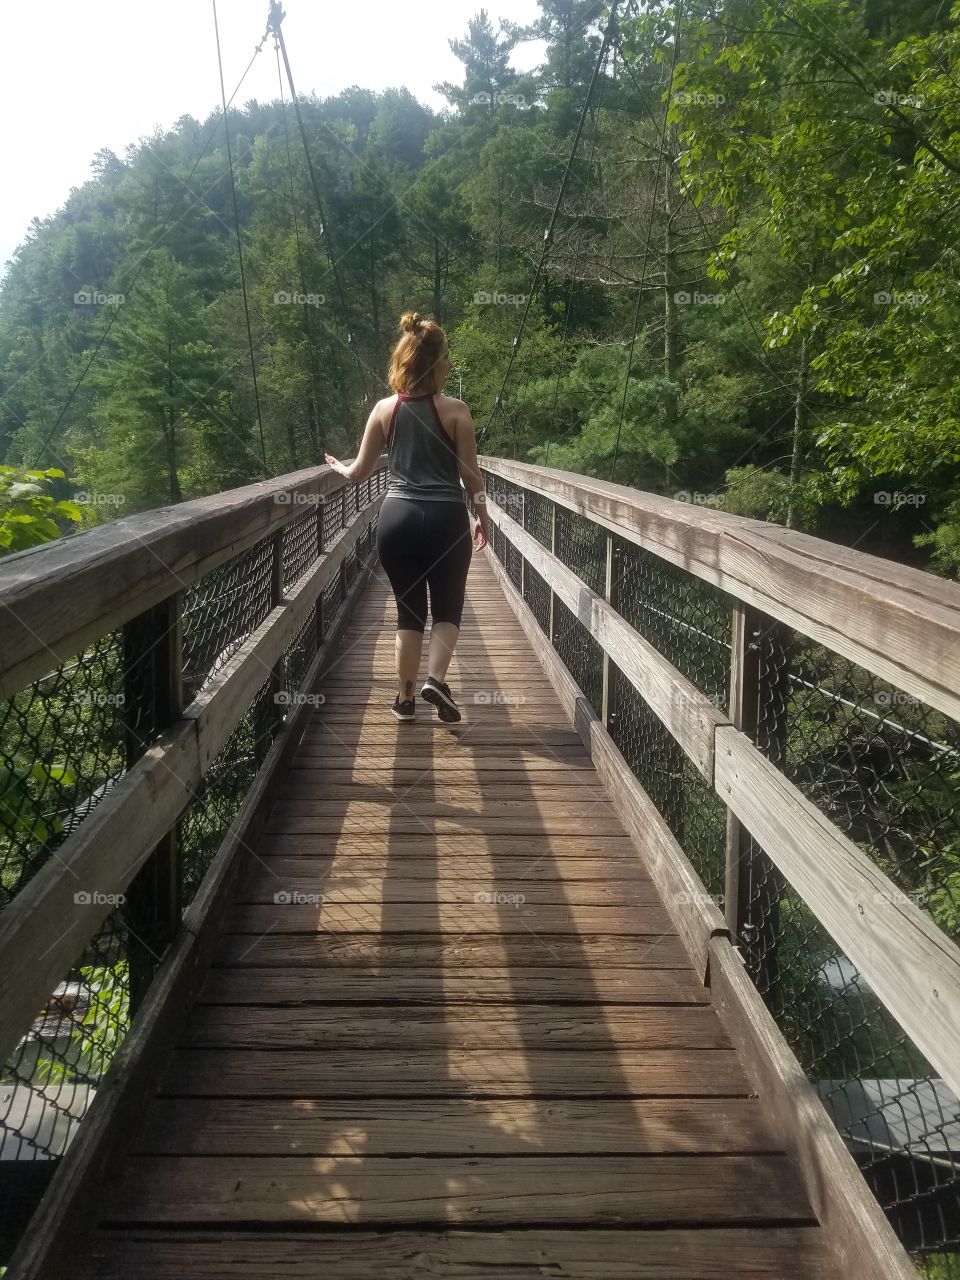 Hiking at Tallulah Falls GA